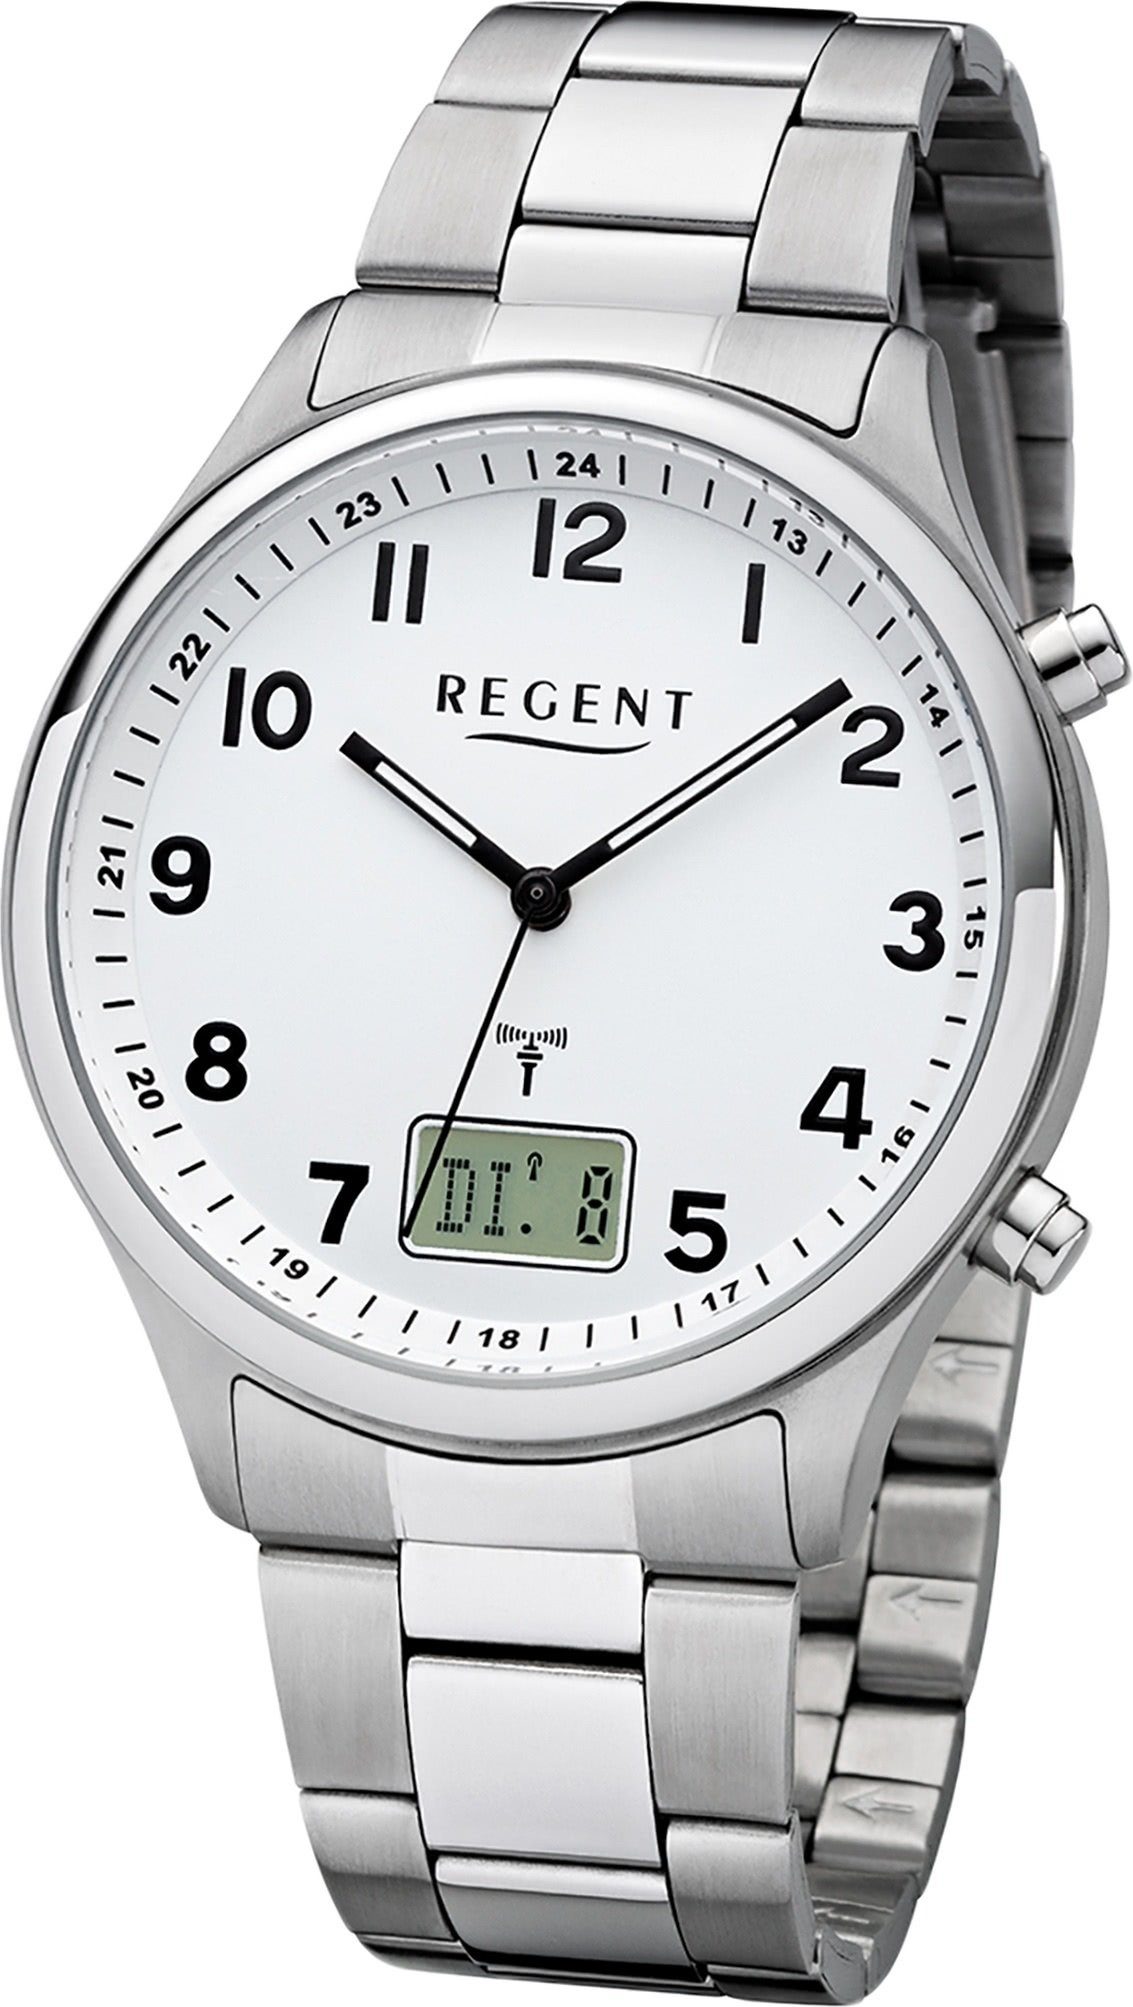 Metall BA-444, Metallarmband Gehäuse, rundes 40mm) Funkuhr Herrenuhr Uhr groß Herren Regent (ca. silber, Regent